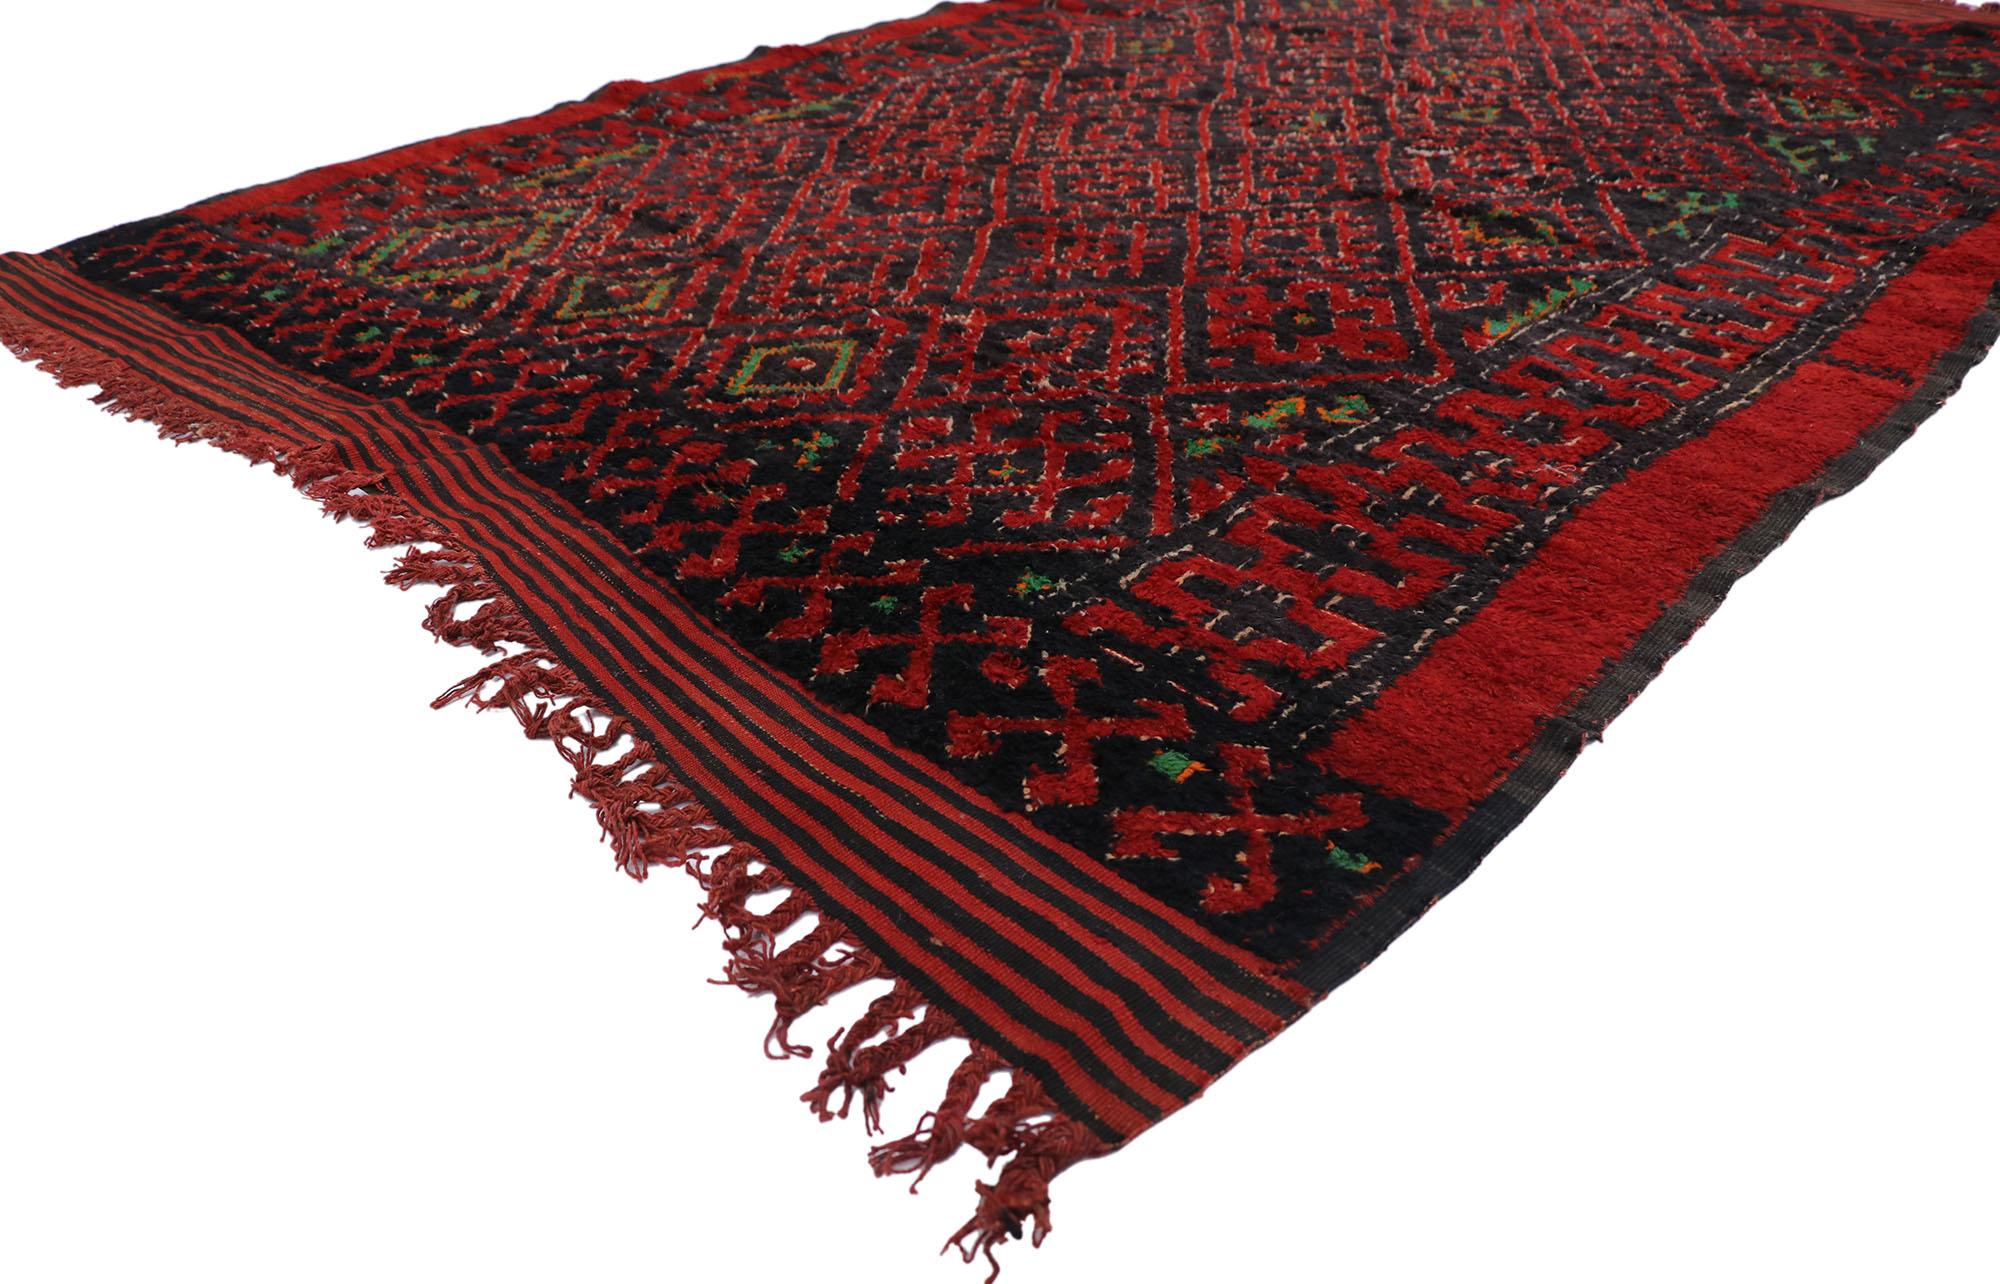 21239 Vieux tapis marocain berbère Beni M'Guild avec style tribal 05'08 x 07'08. Avec son design expressif et audacieux, ses détails et sa texture incroyables, ce tapis berbère vintage Beni M'Guild en laine nouée à la main est une vision captivante